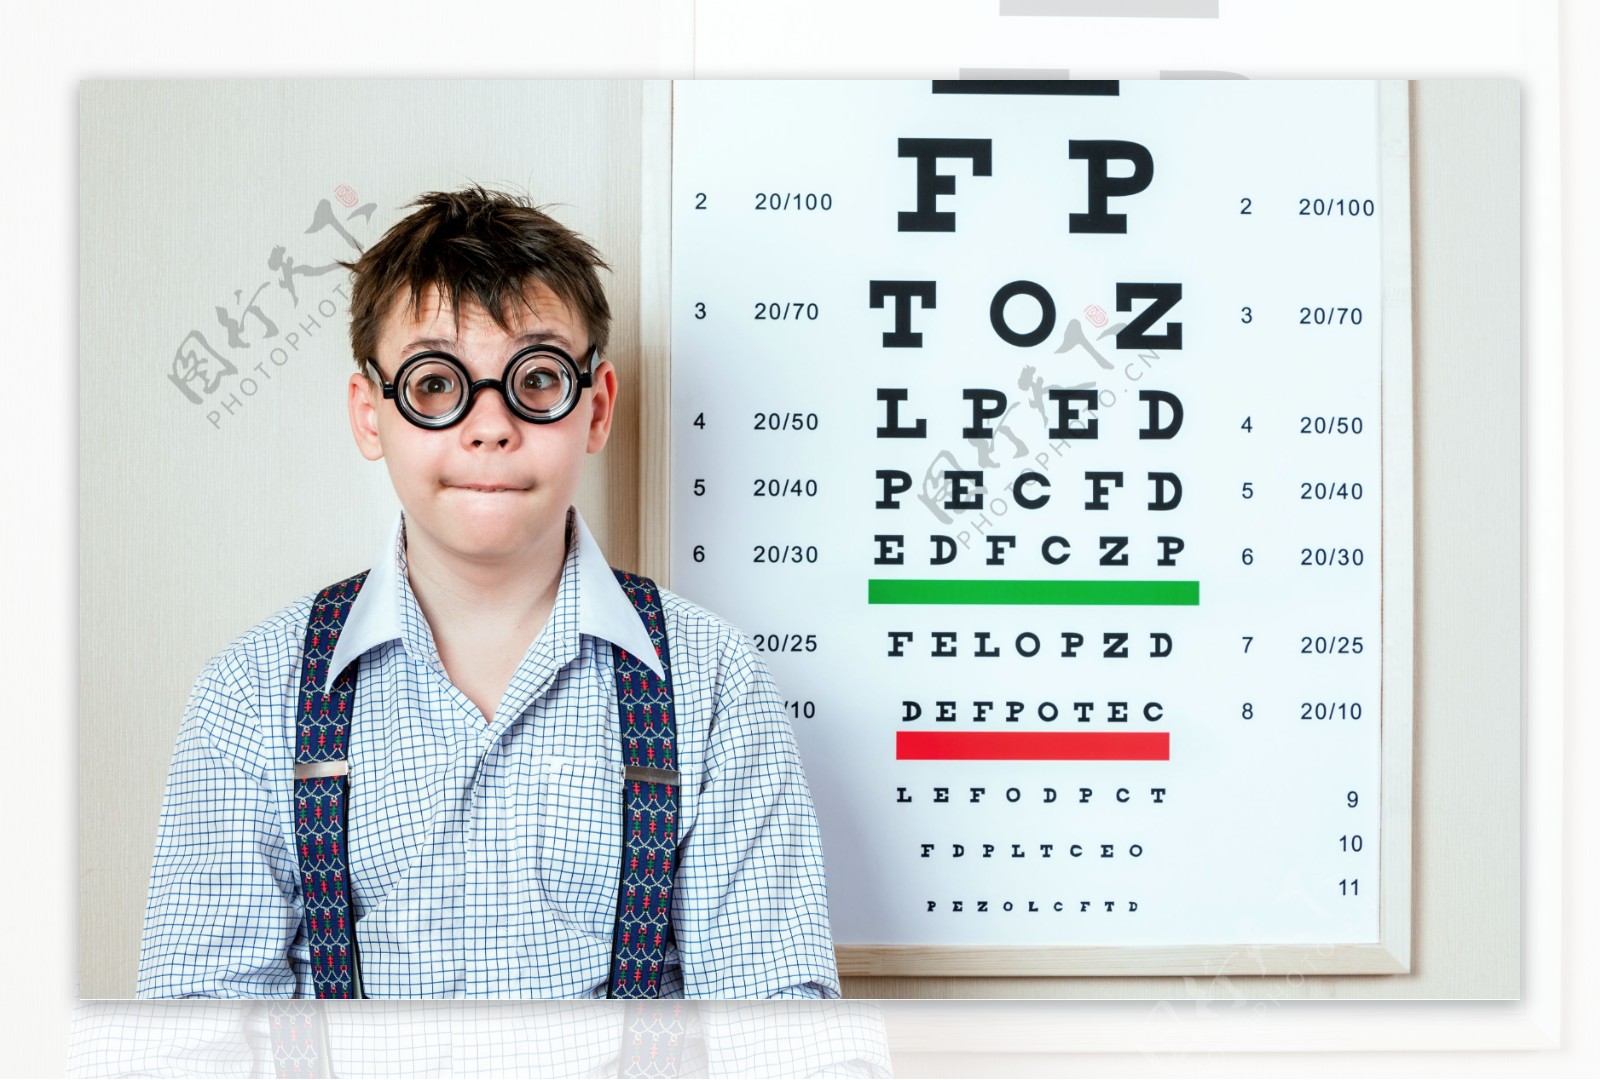 视力表和治疗眼镜的男孩图片